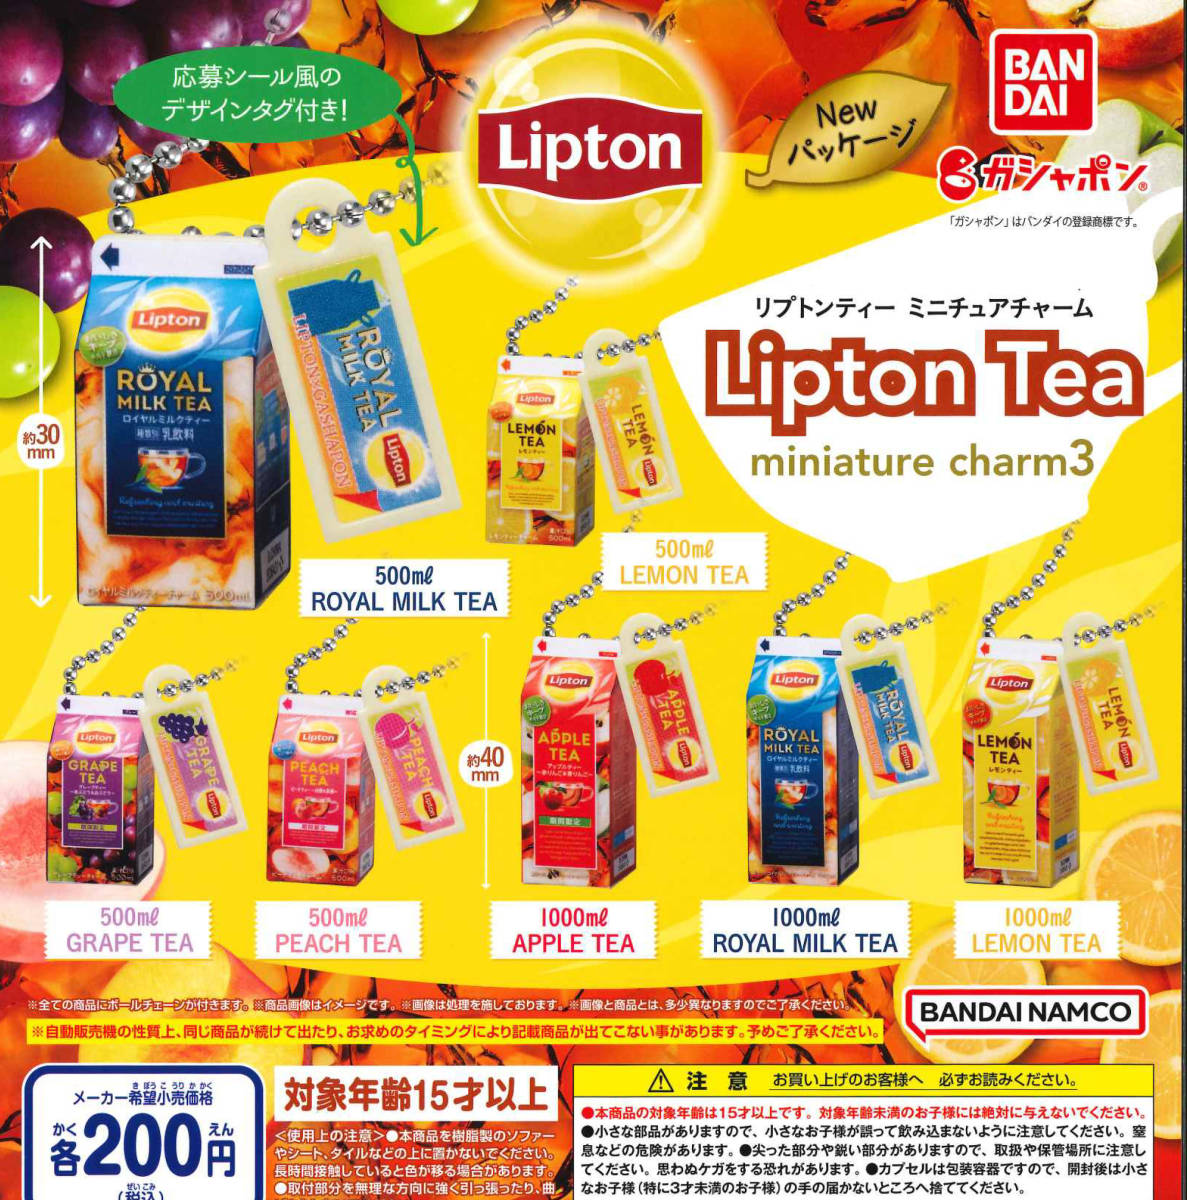 リプトンティー ミニチュアチャーム Lipton Tea miniature charm3 全7種セット ガチャ 送料無料 匿名配送の画像1